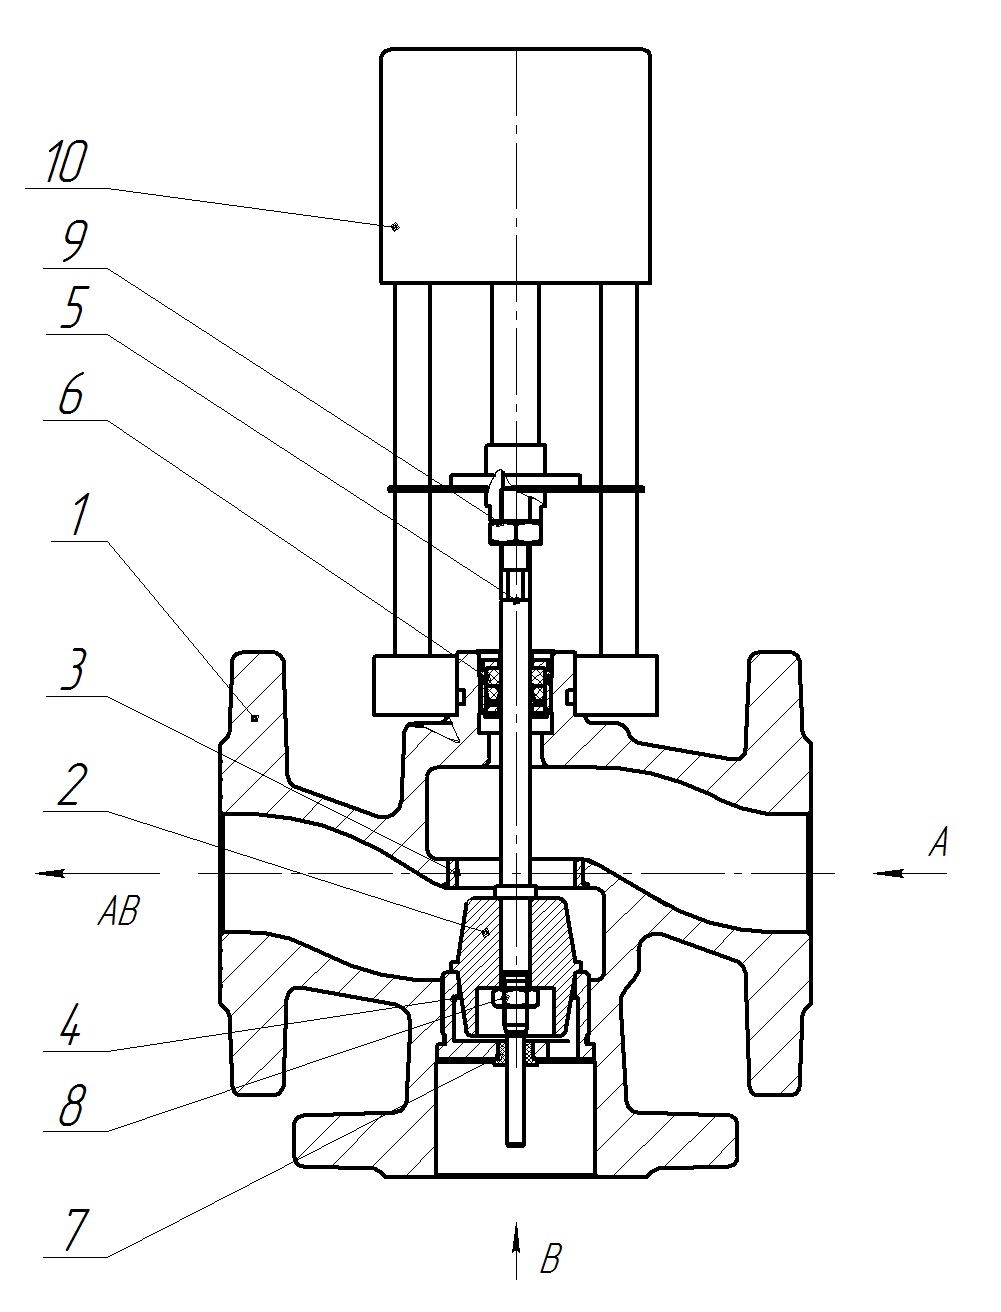 Клапан регулирующий трехходовой разделительный DN.ru 23ч901нж Ду15 Ру16 Kvs0,4 серый чугун СЧ20, фланцевый, Tmax до 150°С с электроприводом Катрабел TW-500-XD220